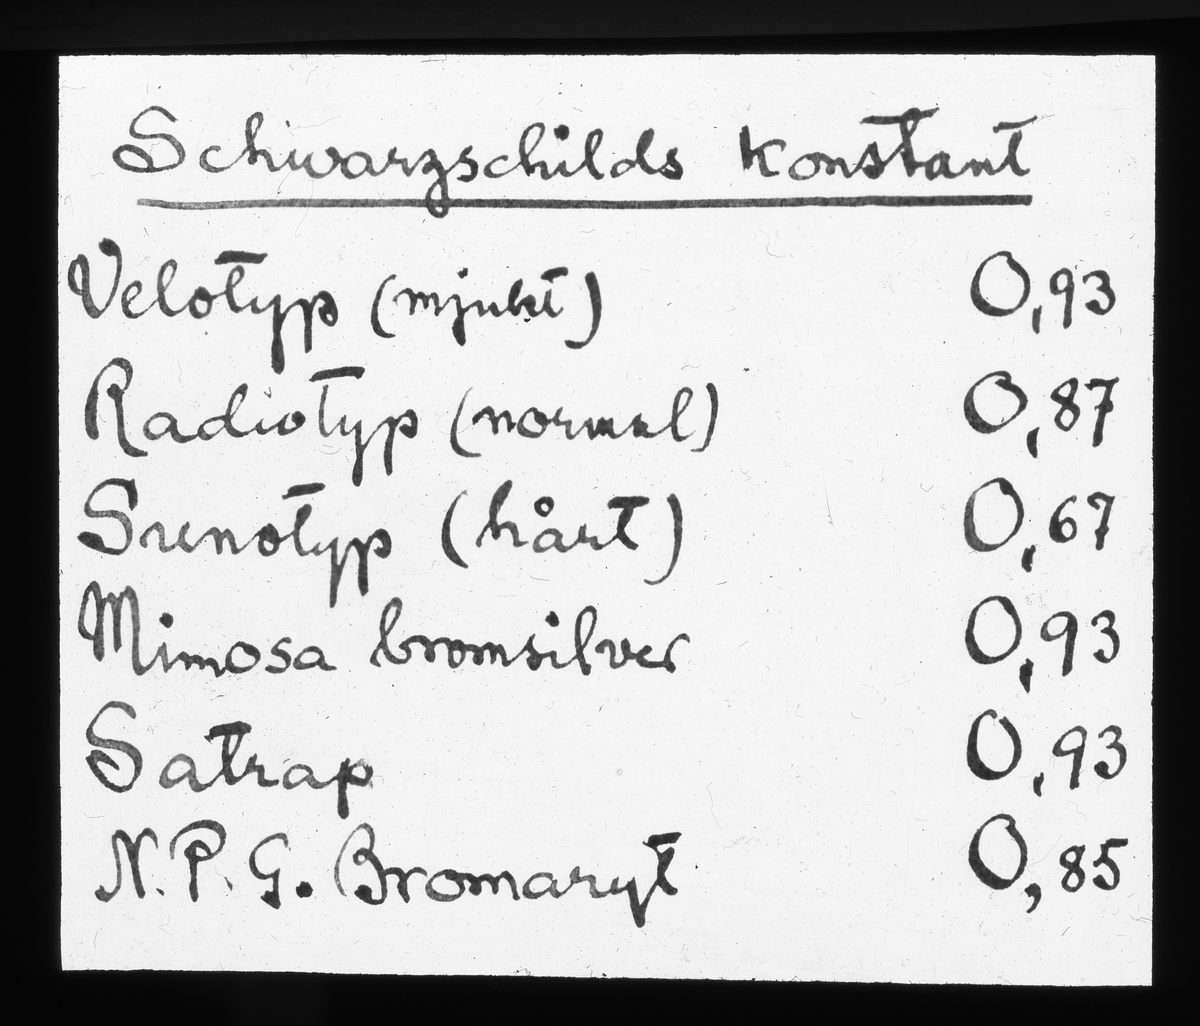 Skioptikonbild från Institutionen för fotografi vid Kungliga Tekniska Högskolan. Använd av professor Helmer Bäckström som föreläsningsmaterial. Bäckström var Sveriges första professor i fotografi vid Kungliga Tekniska Högskolan i Stockholm 1948-1958.
Schwarzschilds konstant.